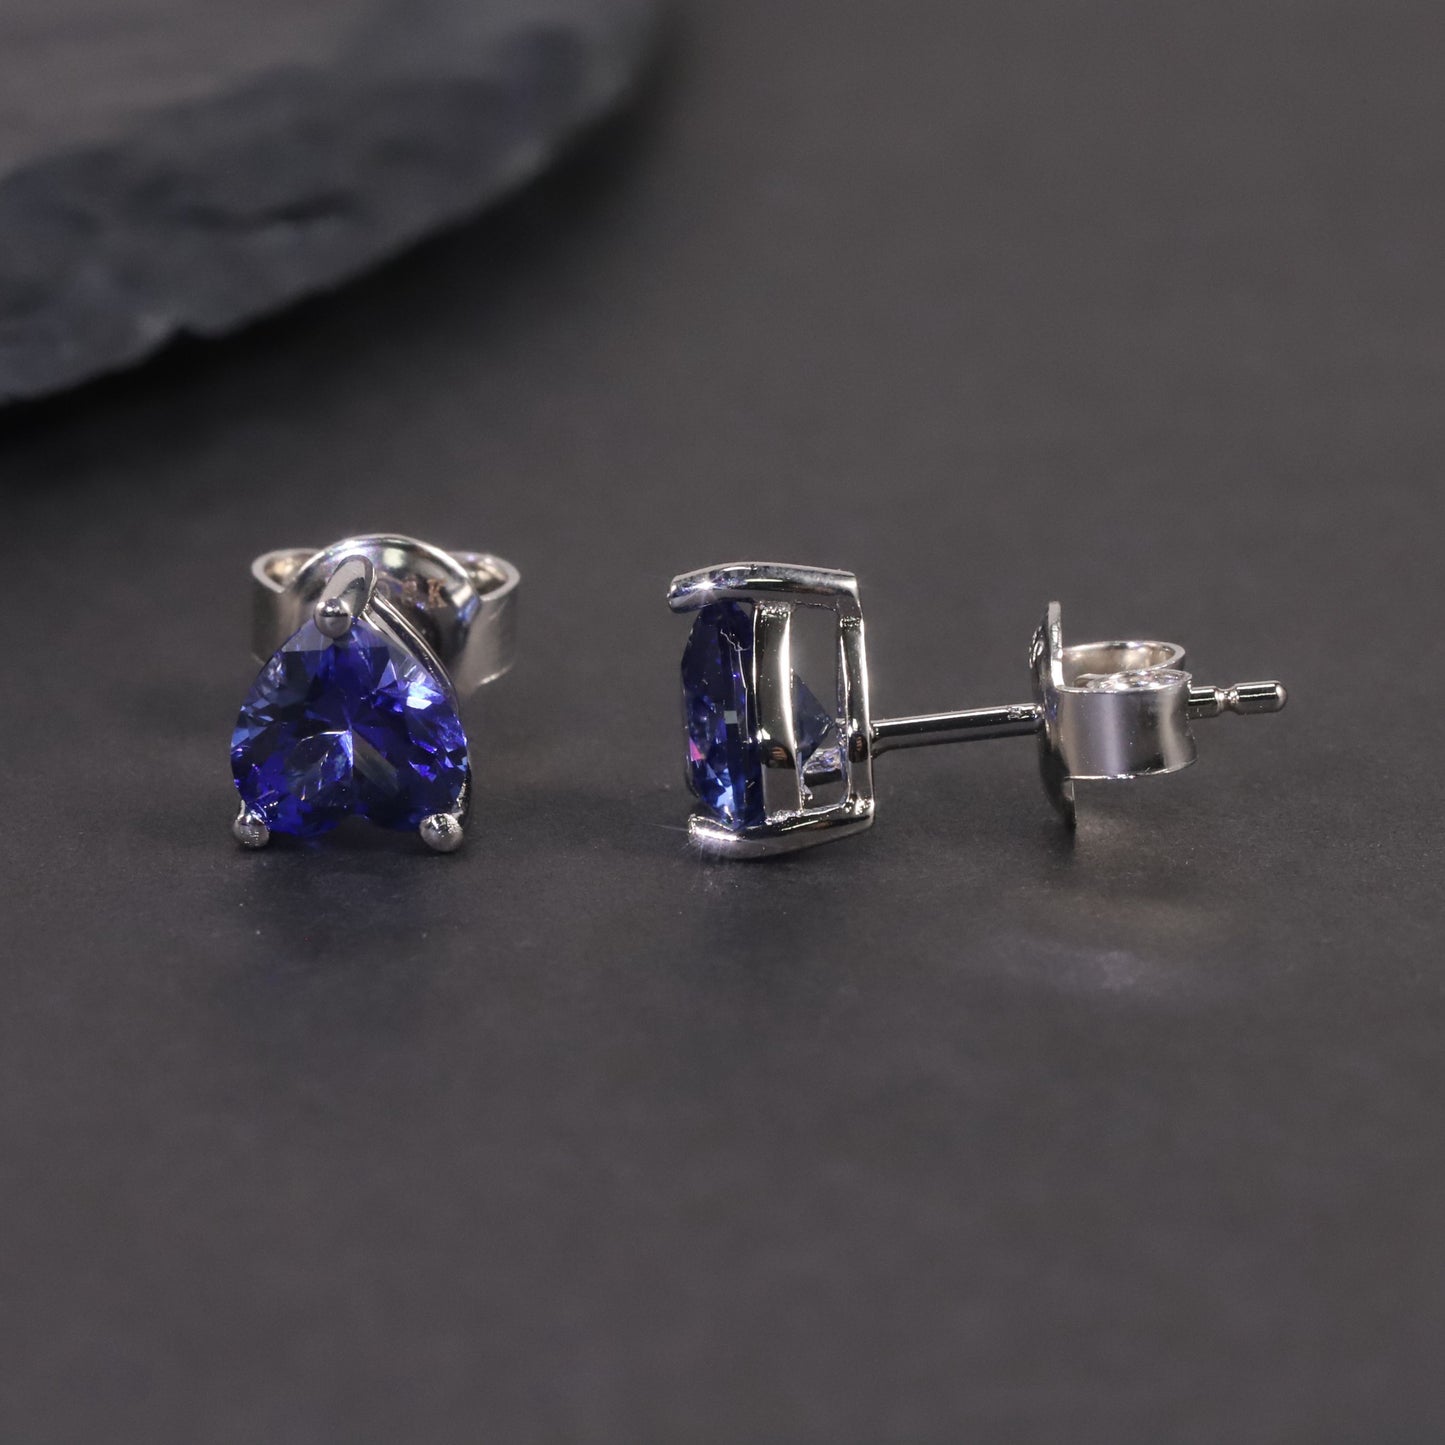 Heart Shape Stud Earrings in Sterling Silver -  Sapphire